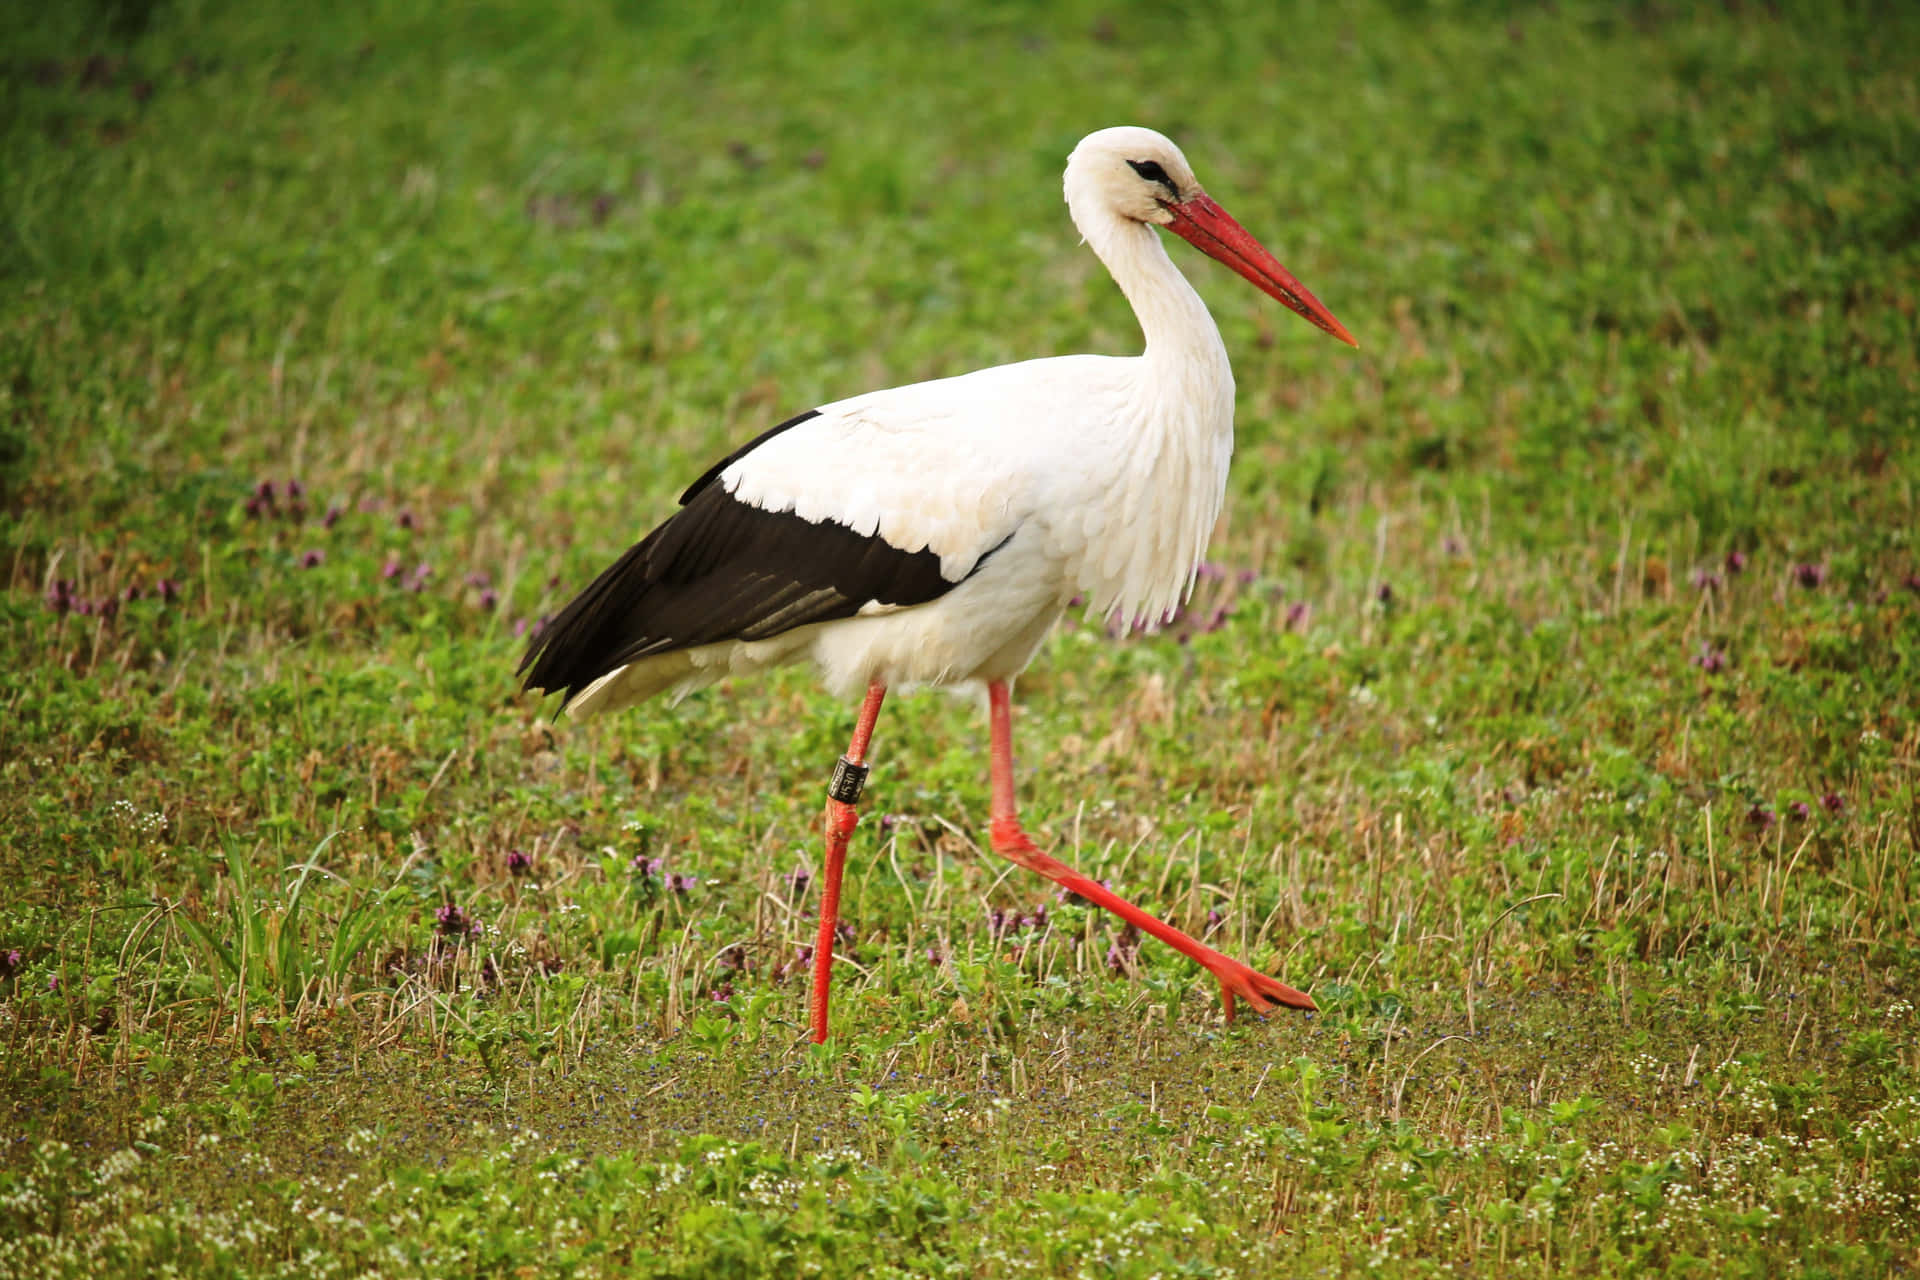 White Stork Walkingin Grassland.jpg Wallpaper